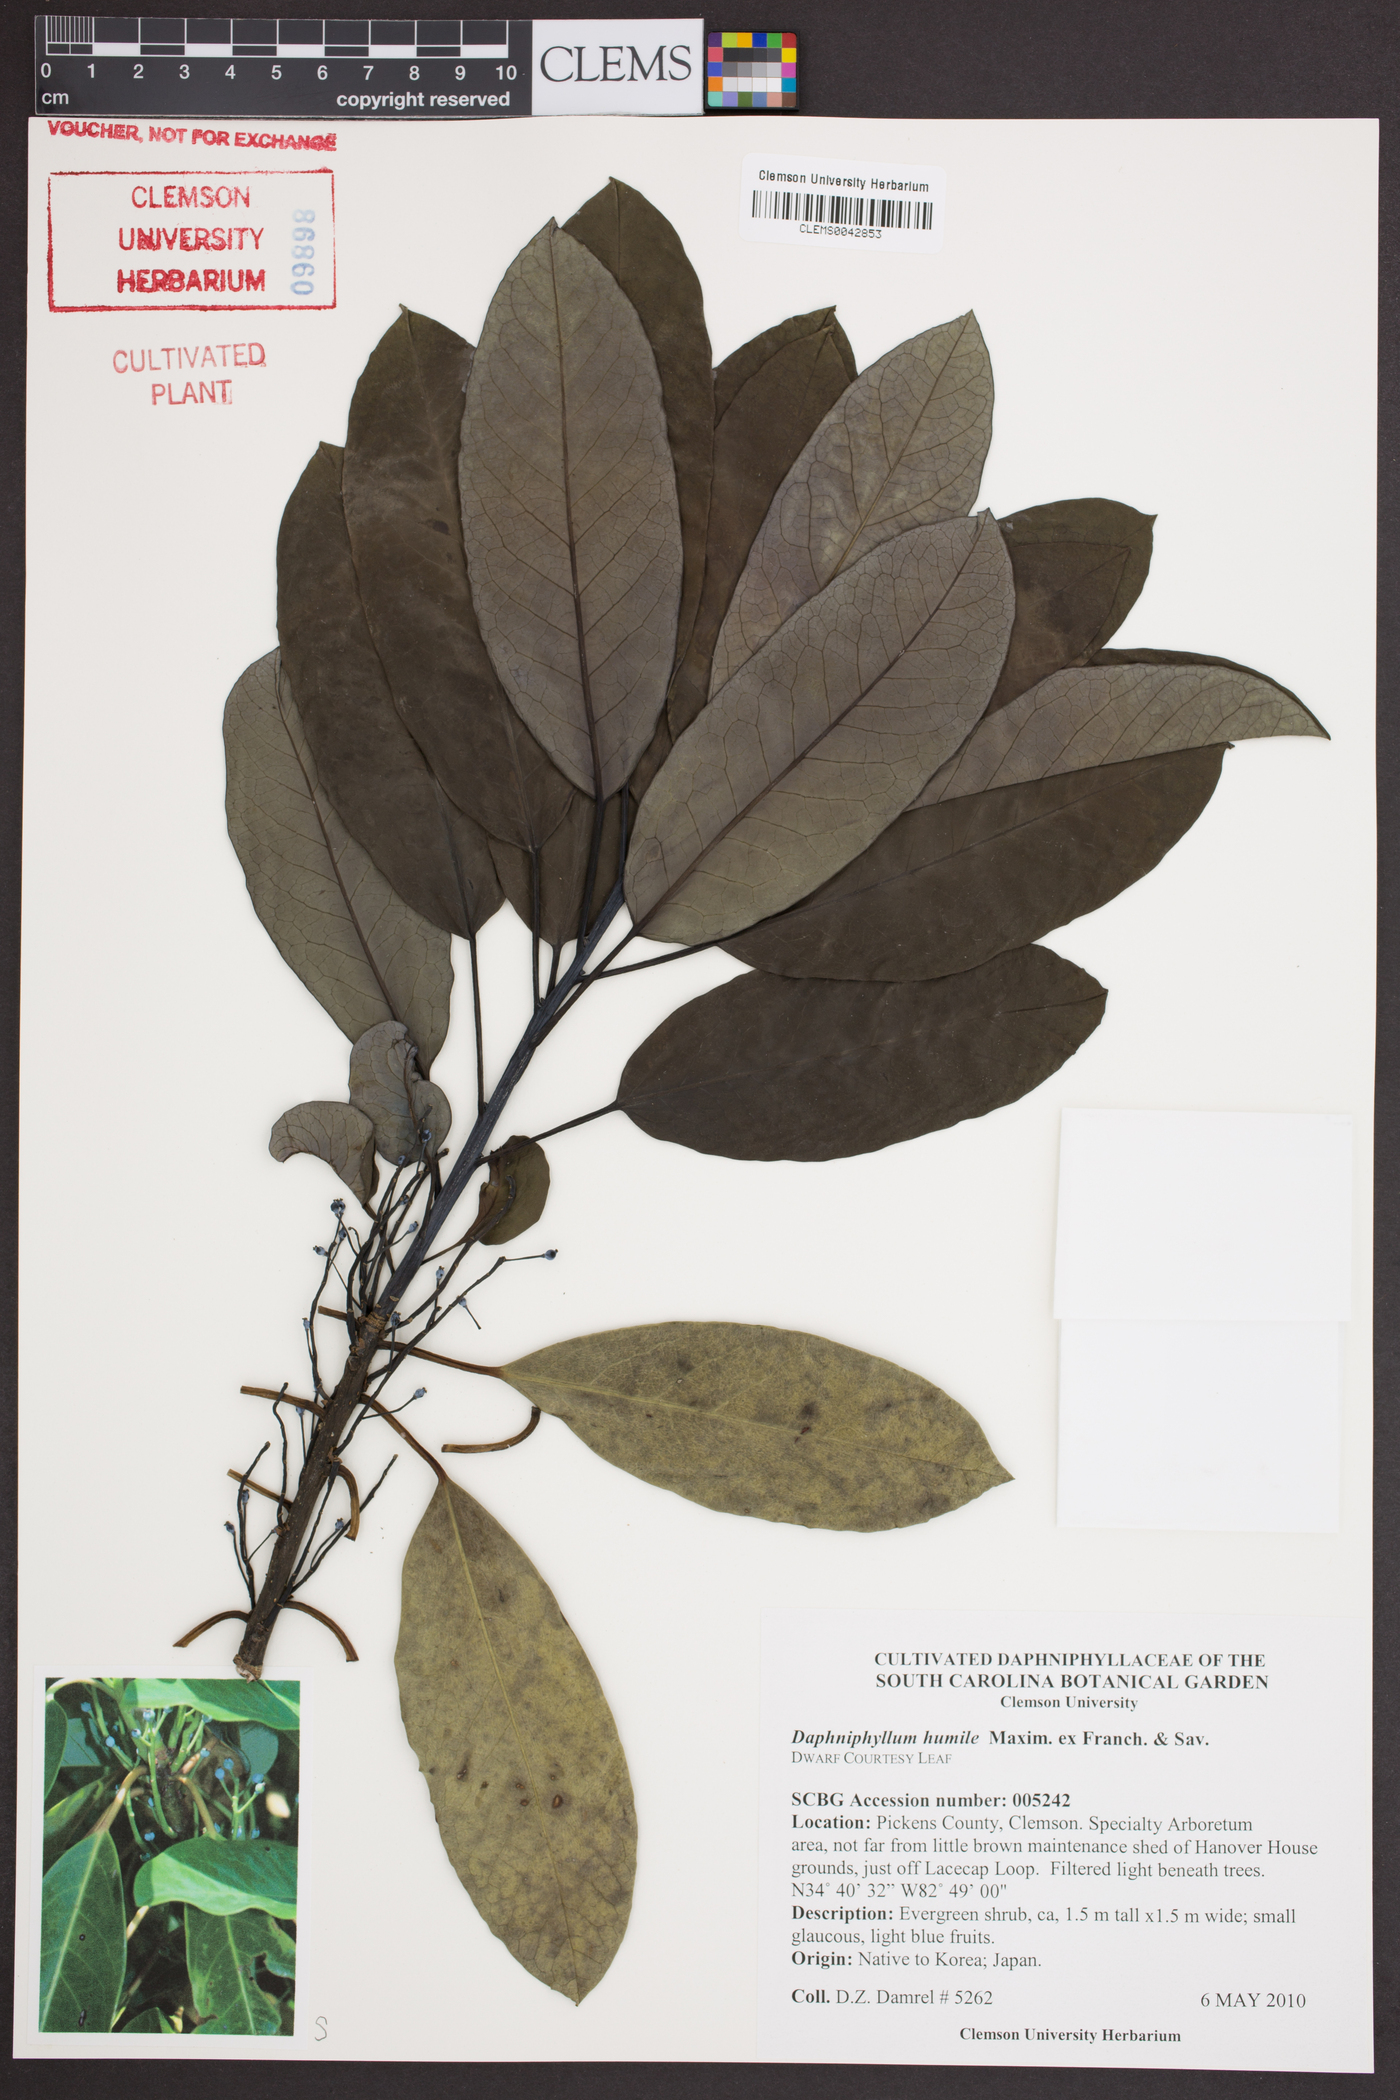 Daphniphyllum macropodum var. humile image